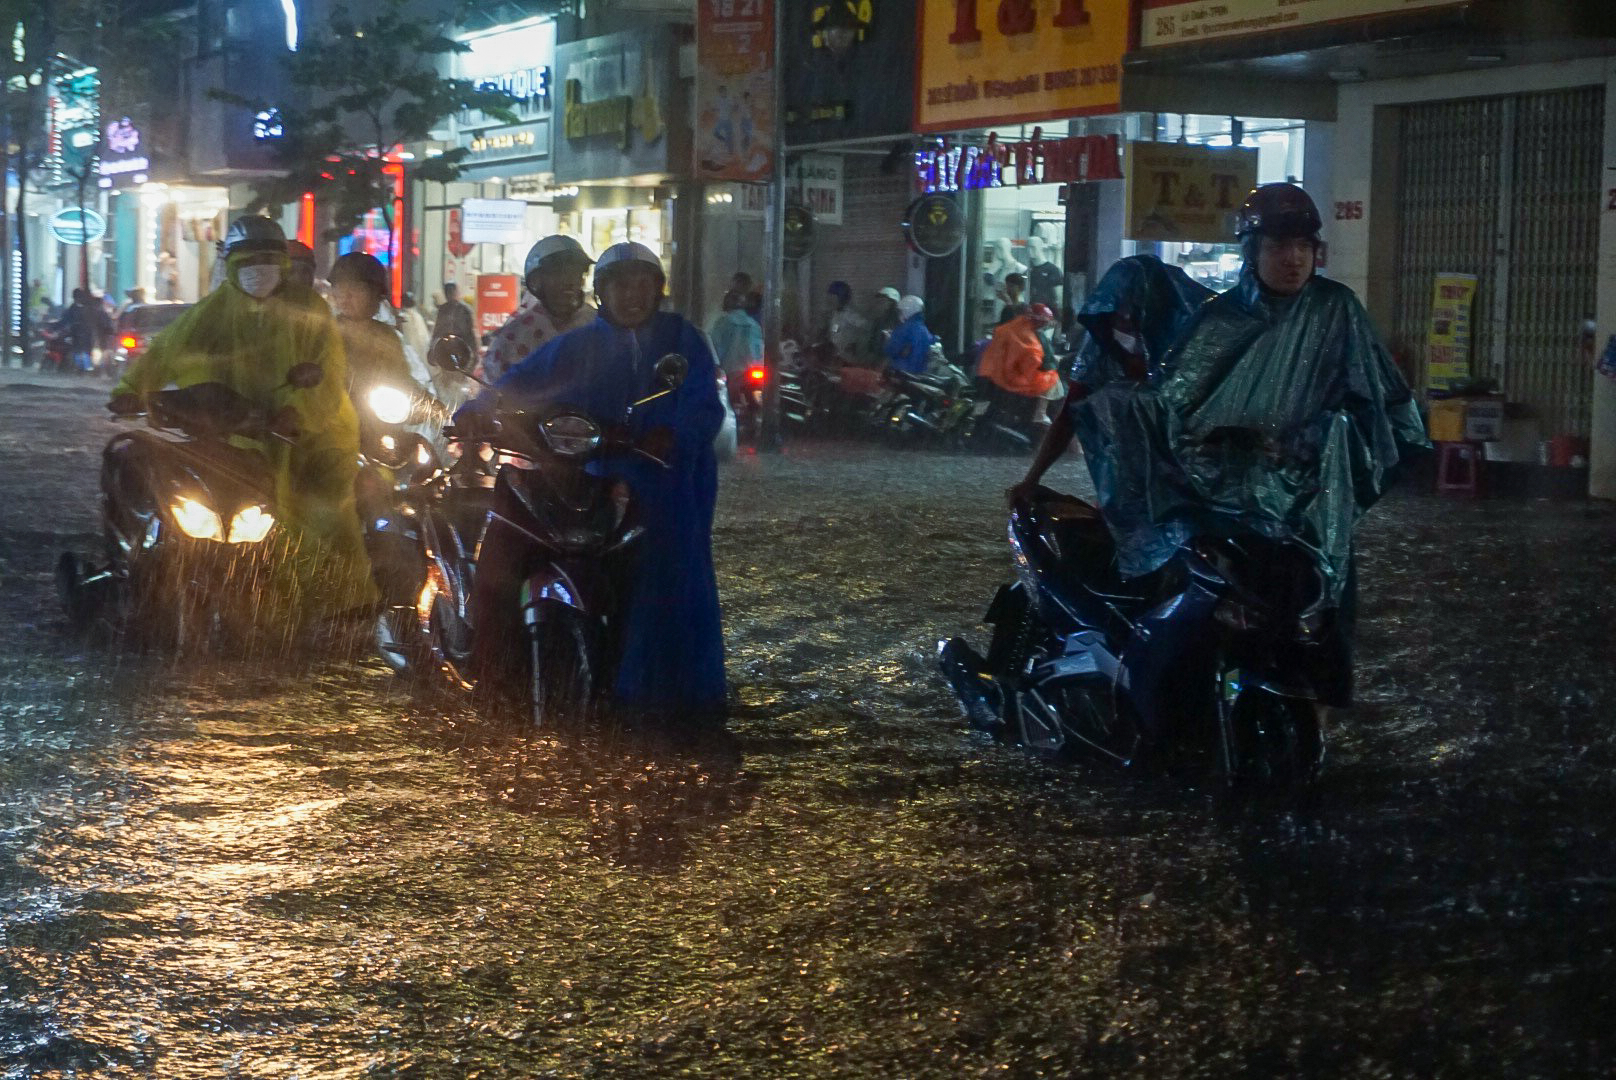 Đường phố Đà Nẵng ngập cục bộ sau mưa lớn, người dân chật vật lội nước về nhà - Ảnh 4.